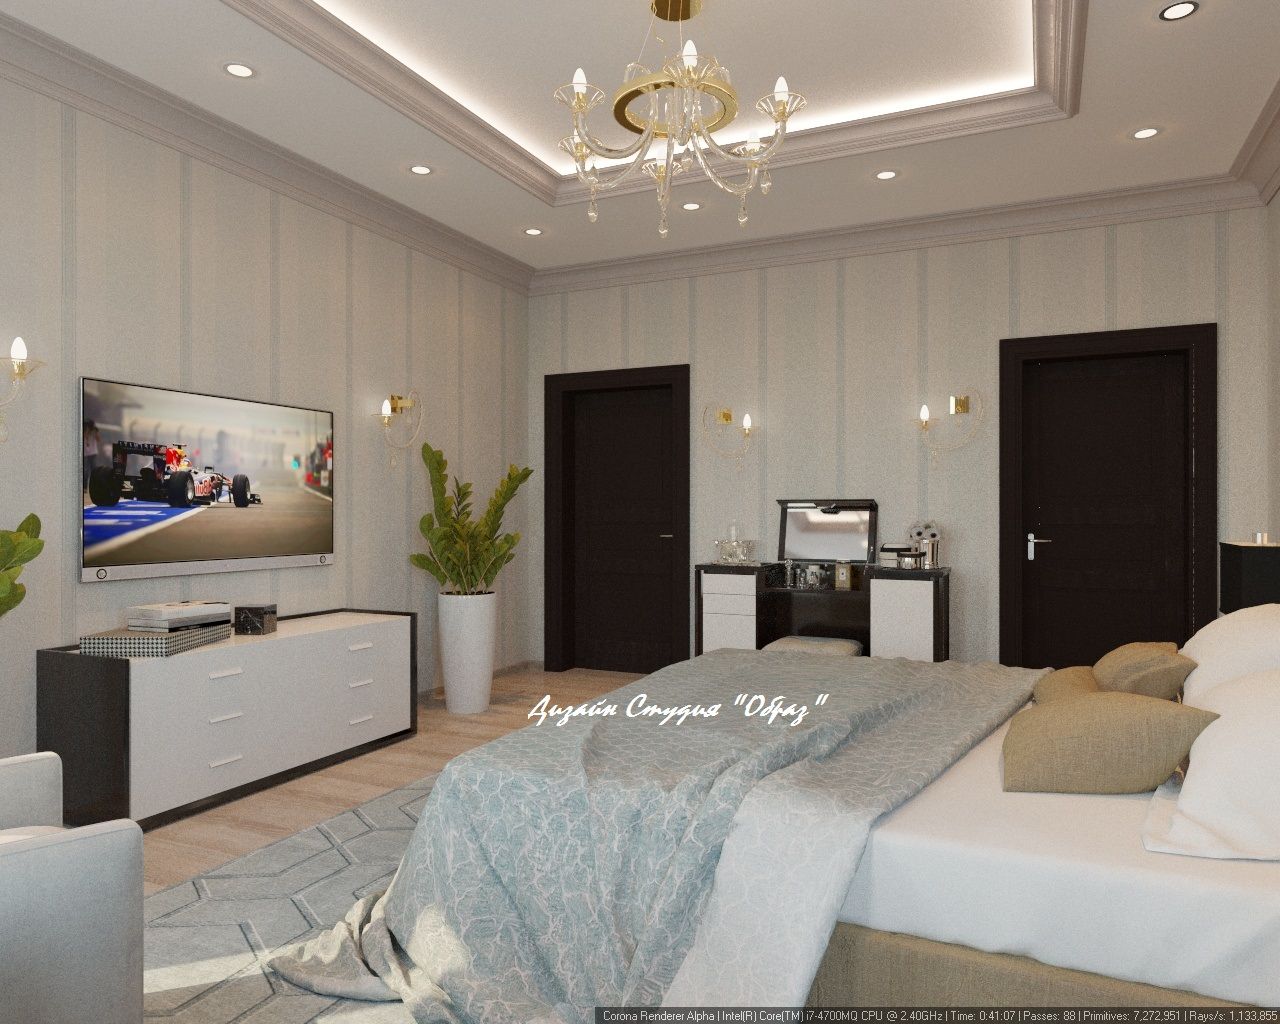 Элегантная спальня в светлых тонах, Дизайн Студия "Образ" Дизайн Студия 'Образ' غرفة نوم